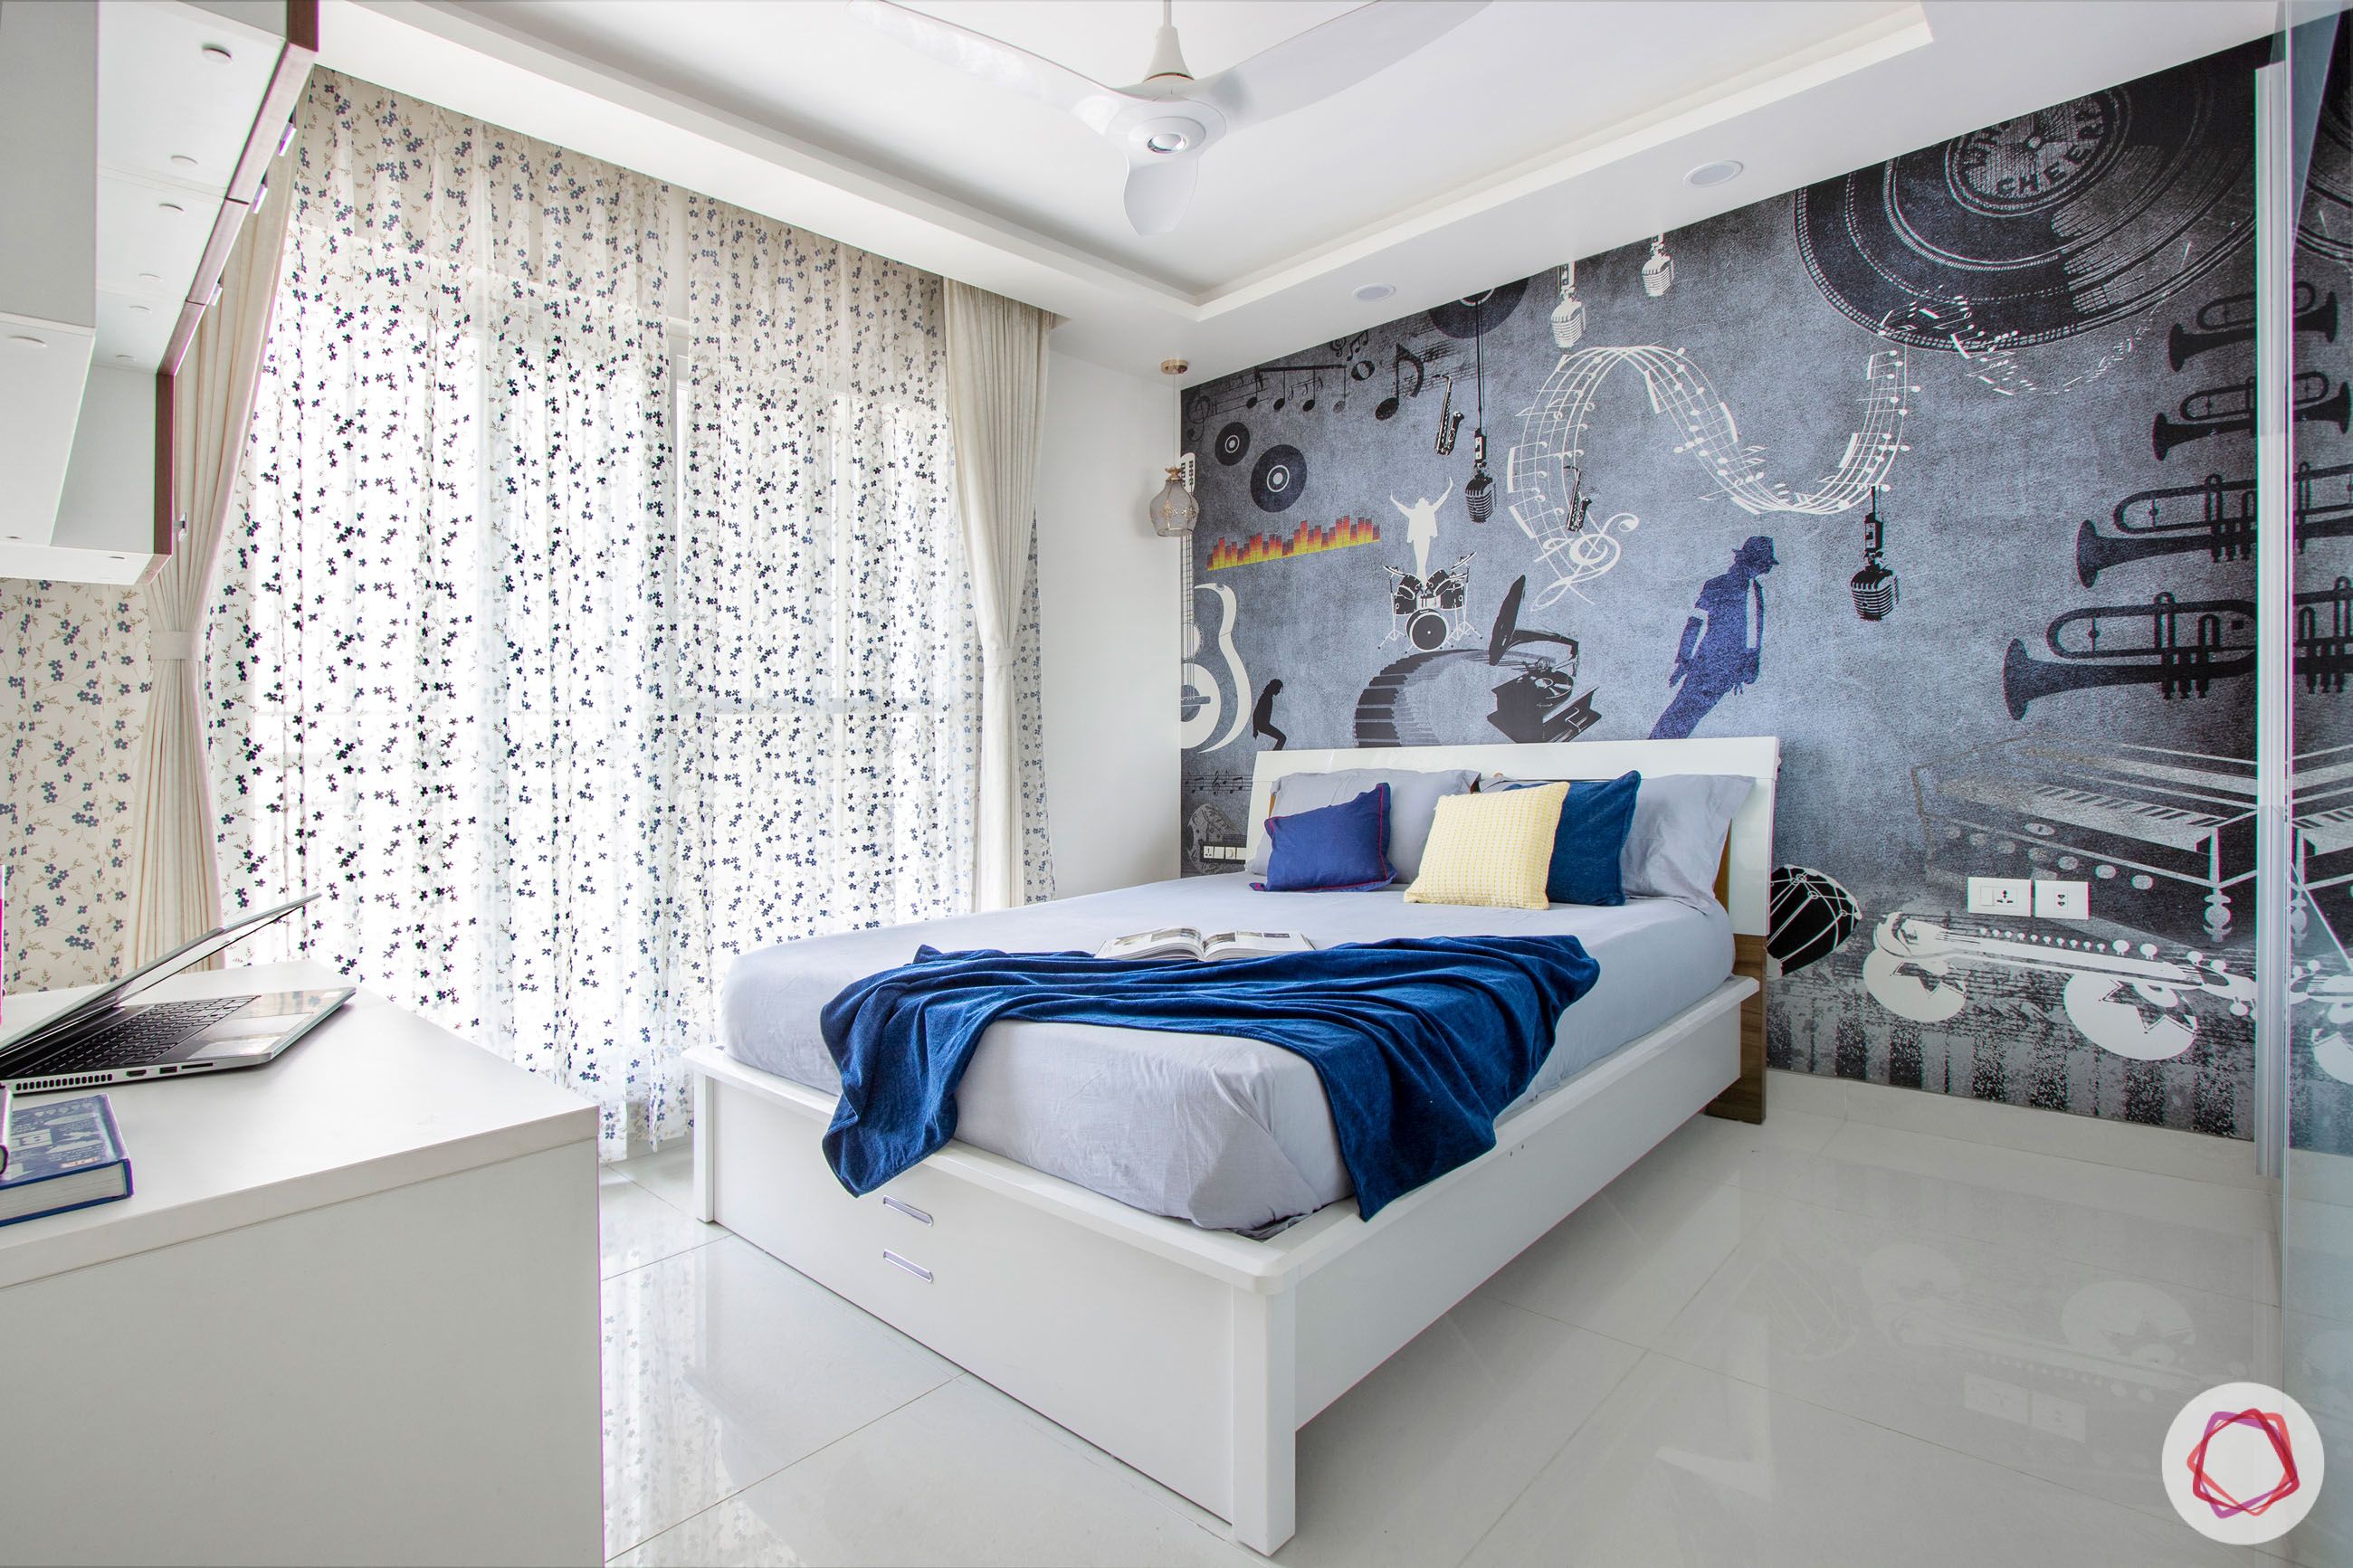 snn-raj-grandeur-boys bedroom-grey and blue bedroom